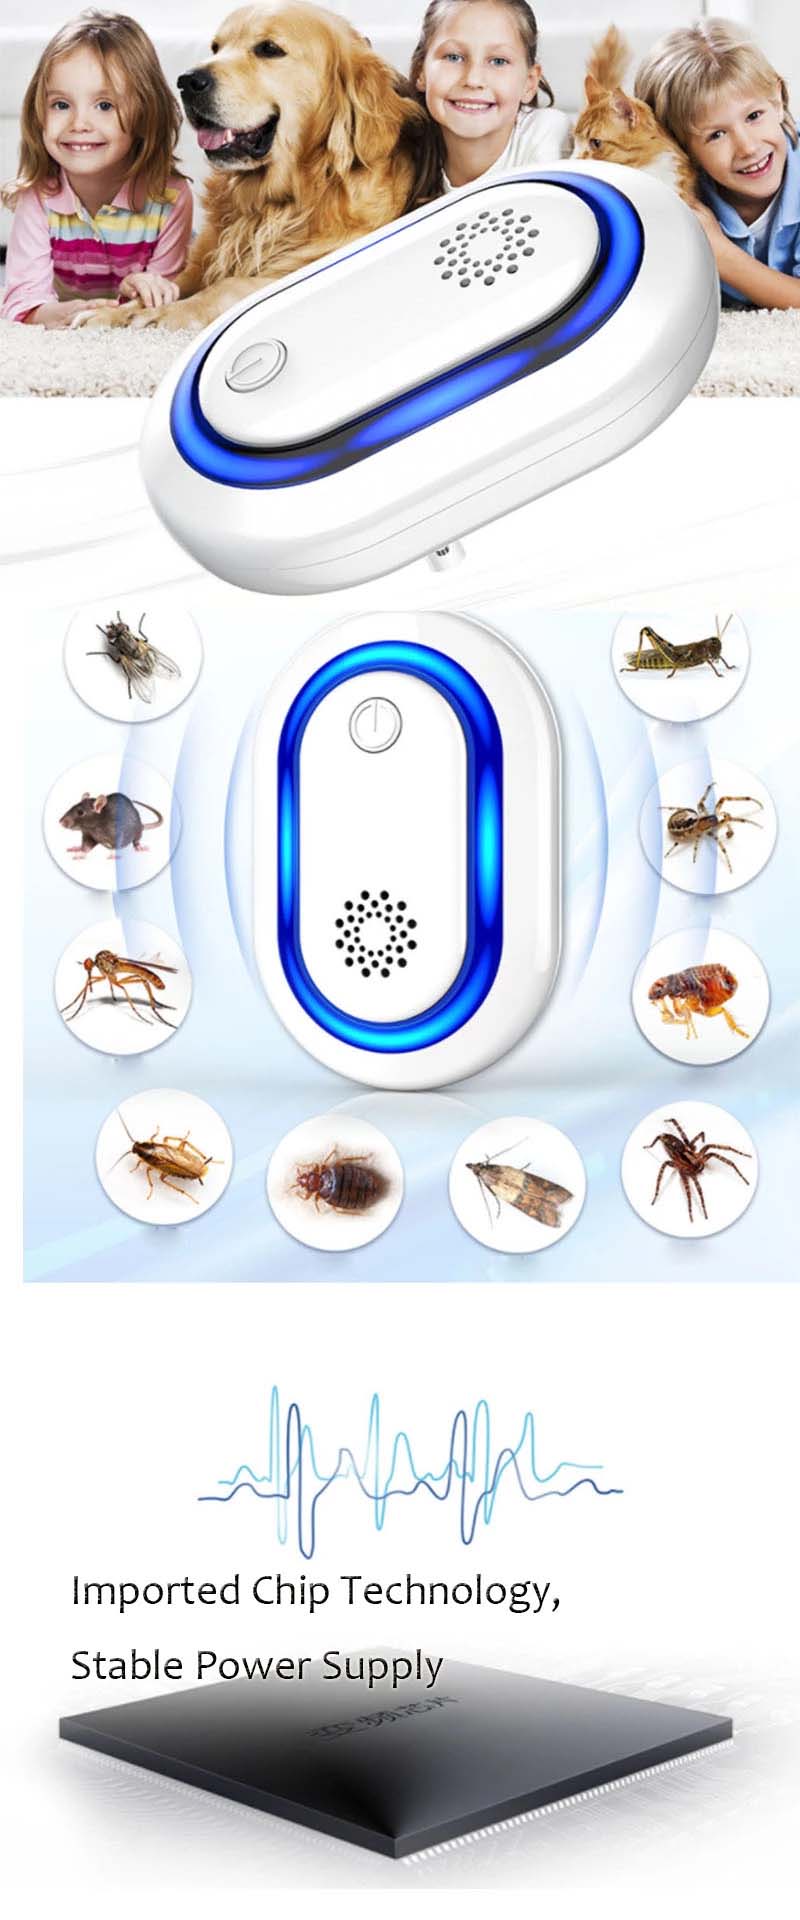 منخفضة الطاقة المغناطيسي مبيد الحشرات الإلكترونية بالموجات فوق الصوتية رفض مبيد الحشرات LED طارد القوارض